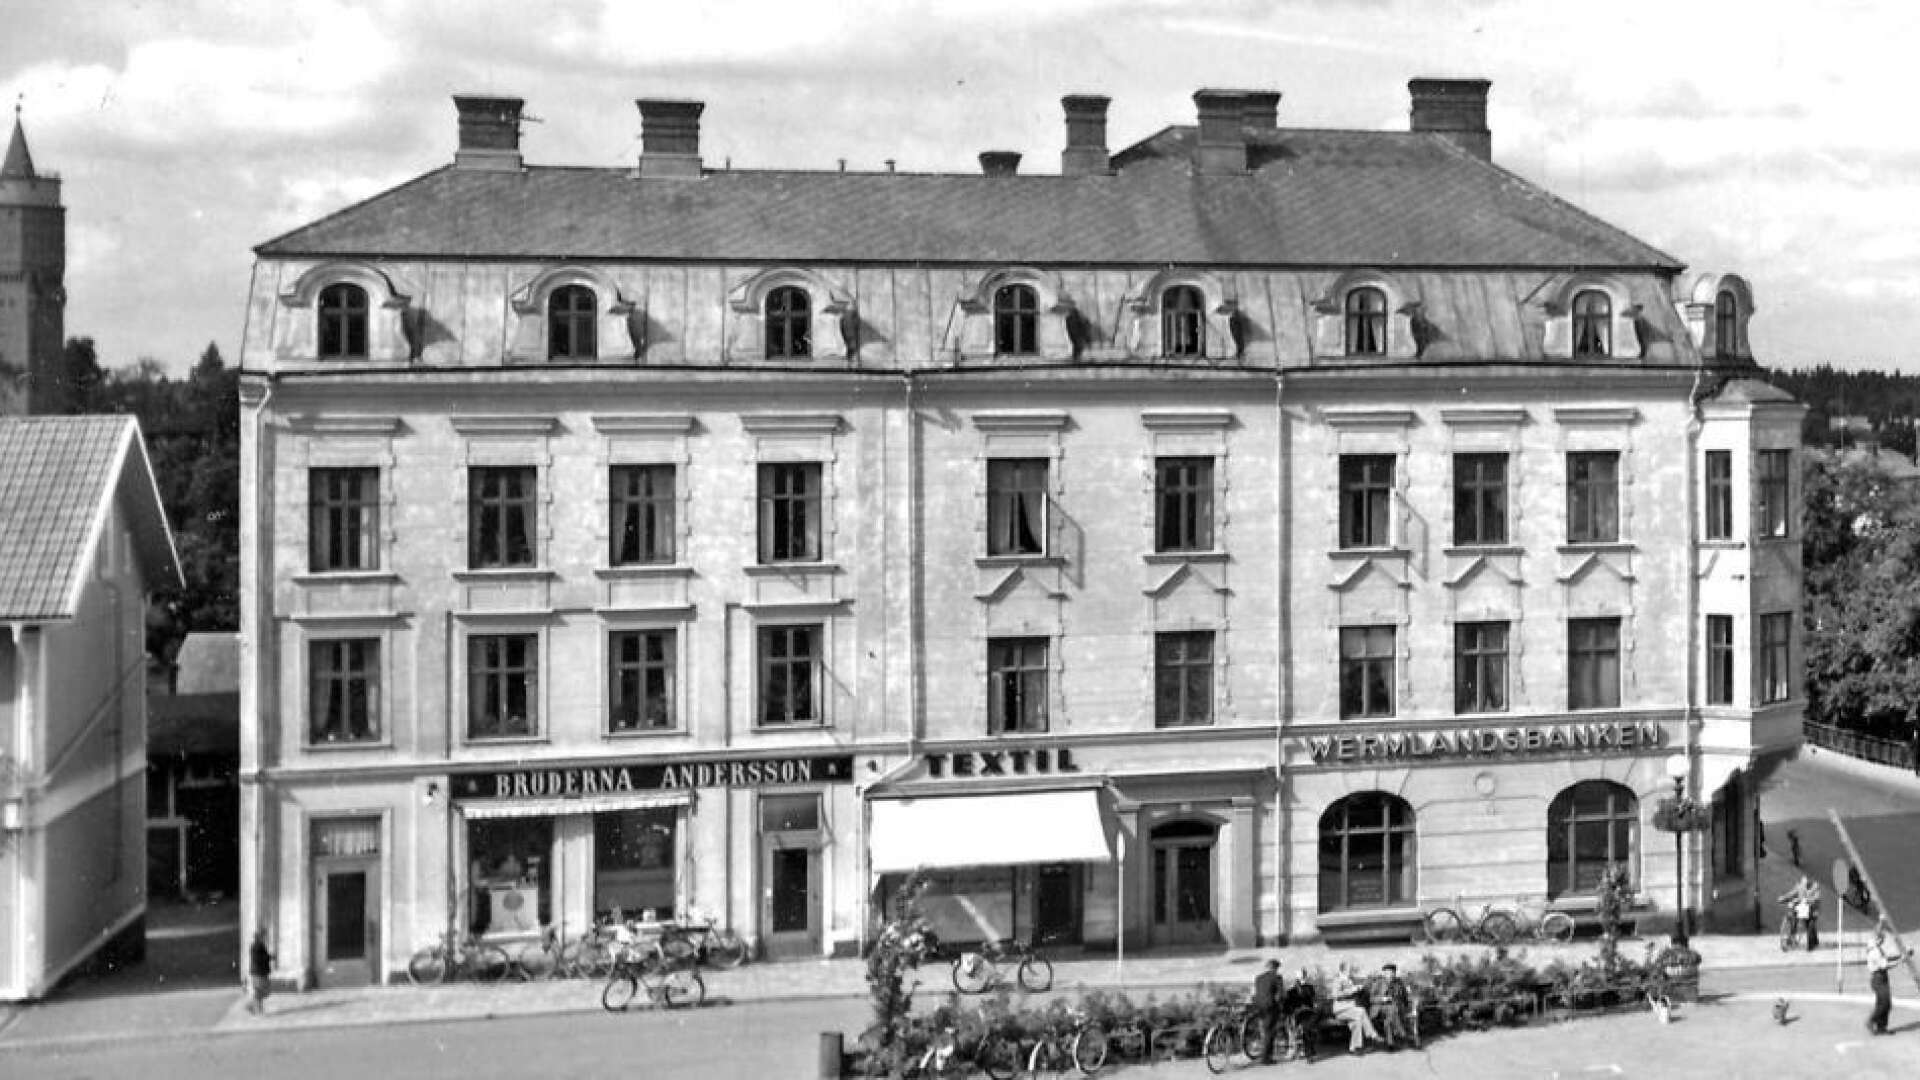 Så här såg huset ut på 1950-talet. Bröderna Anderssons charkuteriaffär till vänster, garnaffären Textil i mitten och Wermlandsbanken till höger.